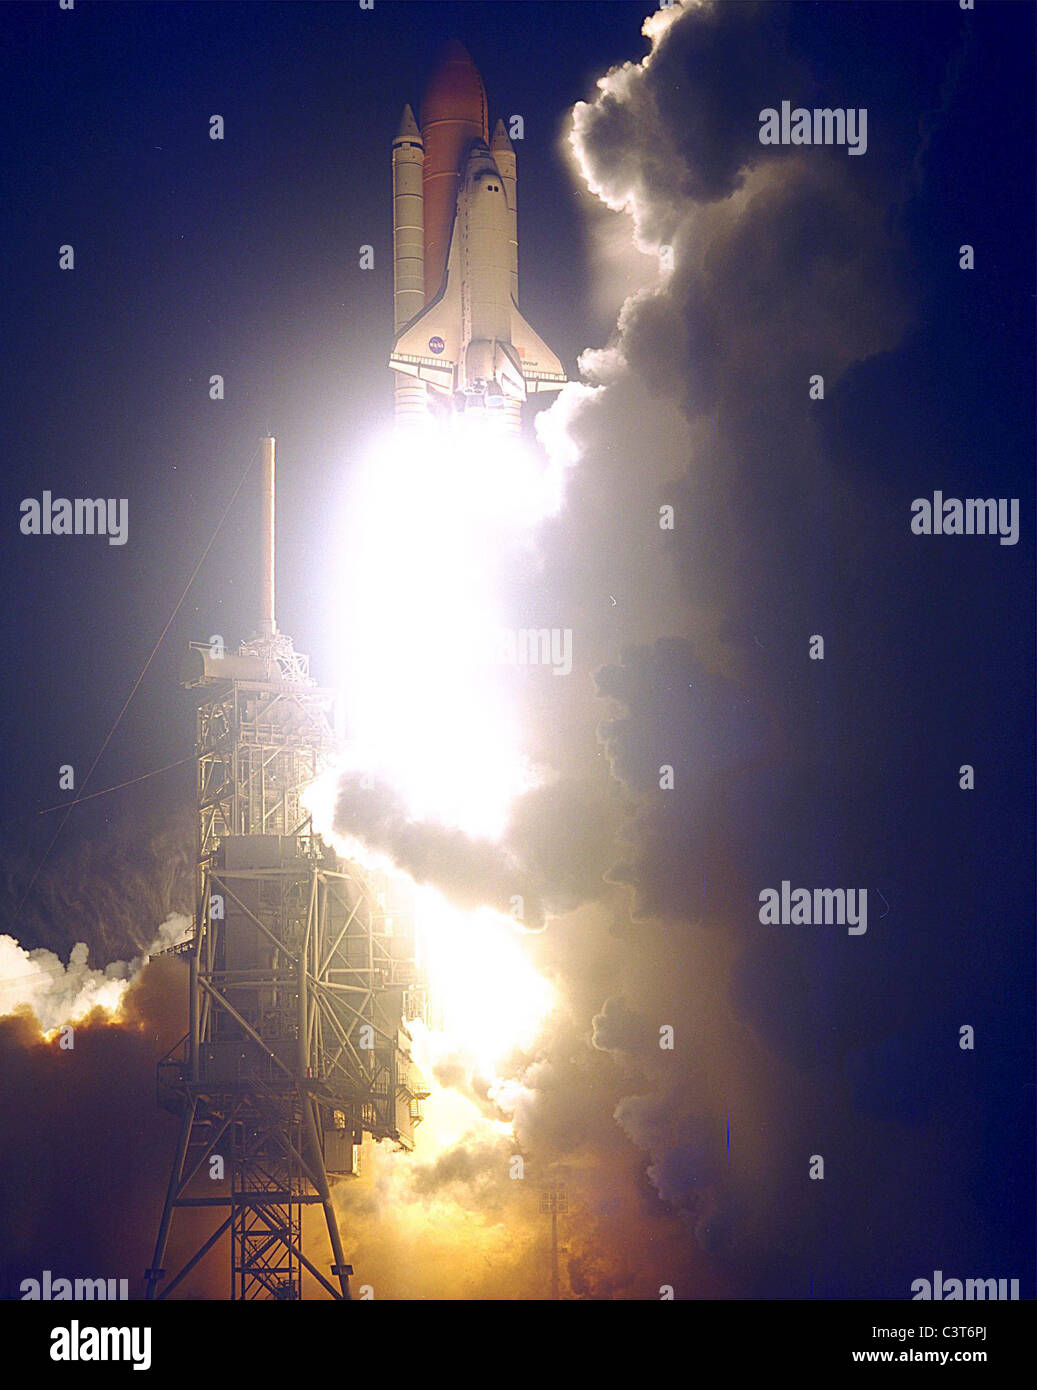 Bemühen steigt das Space Shuttle Endeavour leuchtet am Himmel, wie es auf den ersten US-Mission STS-88, die auf der Vollversammlung der Internationalen Raumstation widmet sich einschifft. liftoff auf Dec. 4 Vom Launch Pad 39a war bei 3:35:34 Uhr EST. Während des fast 12-tägige Mission ist die sechsköpfige Crew wird Mate im Raum die ersten beiden Elemente der internationalen Raumstation die bereits umkreisen zarya Steuermodul mit der Einheit verbinden Modul durchgeführt durch Bemühen. Besatzungsmitglieder commander Robert d. Stockfoto